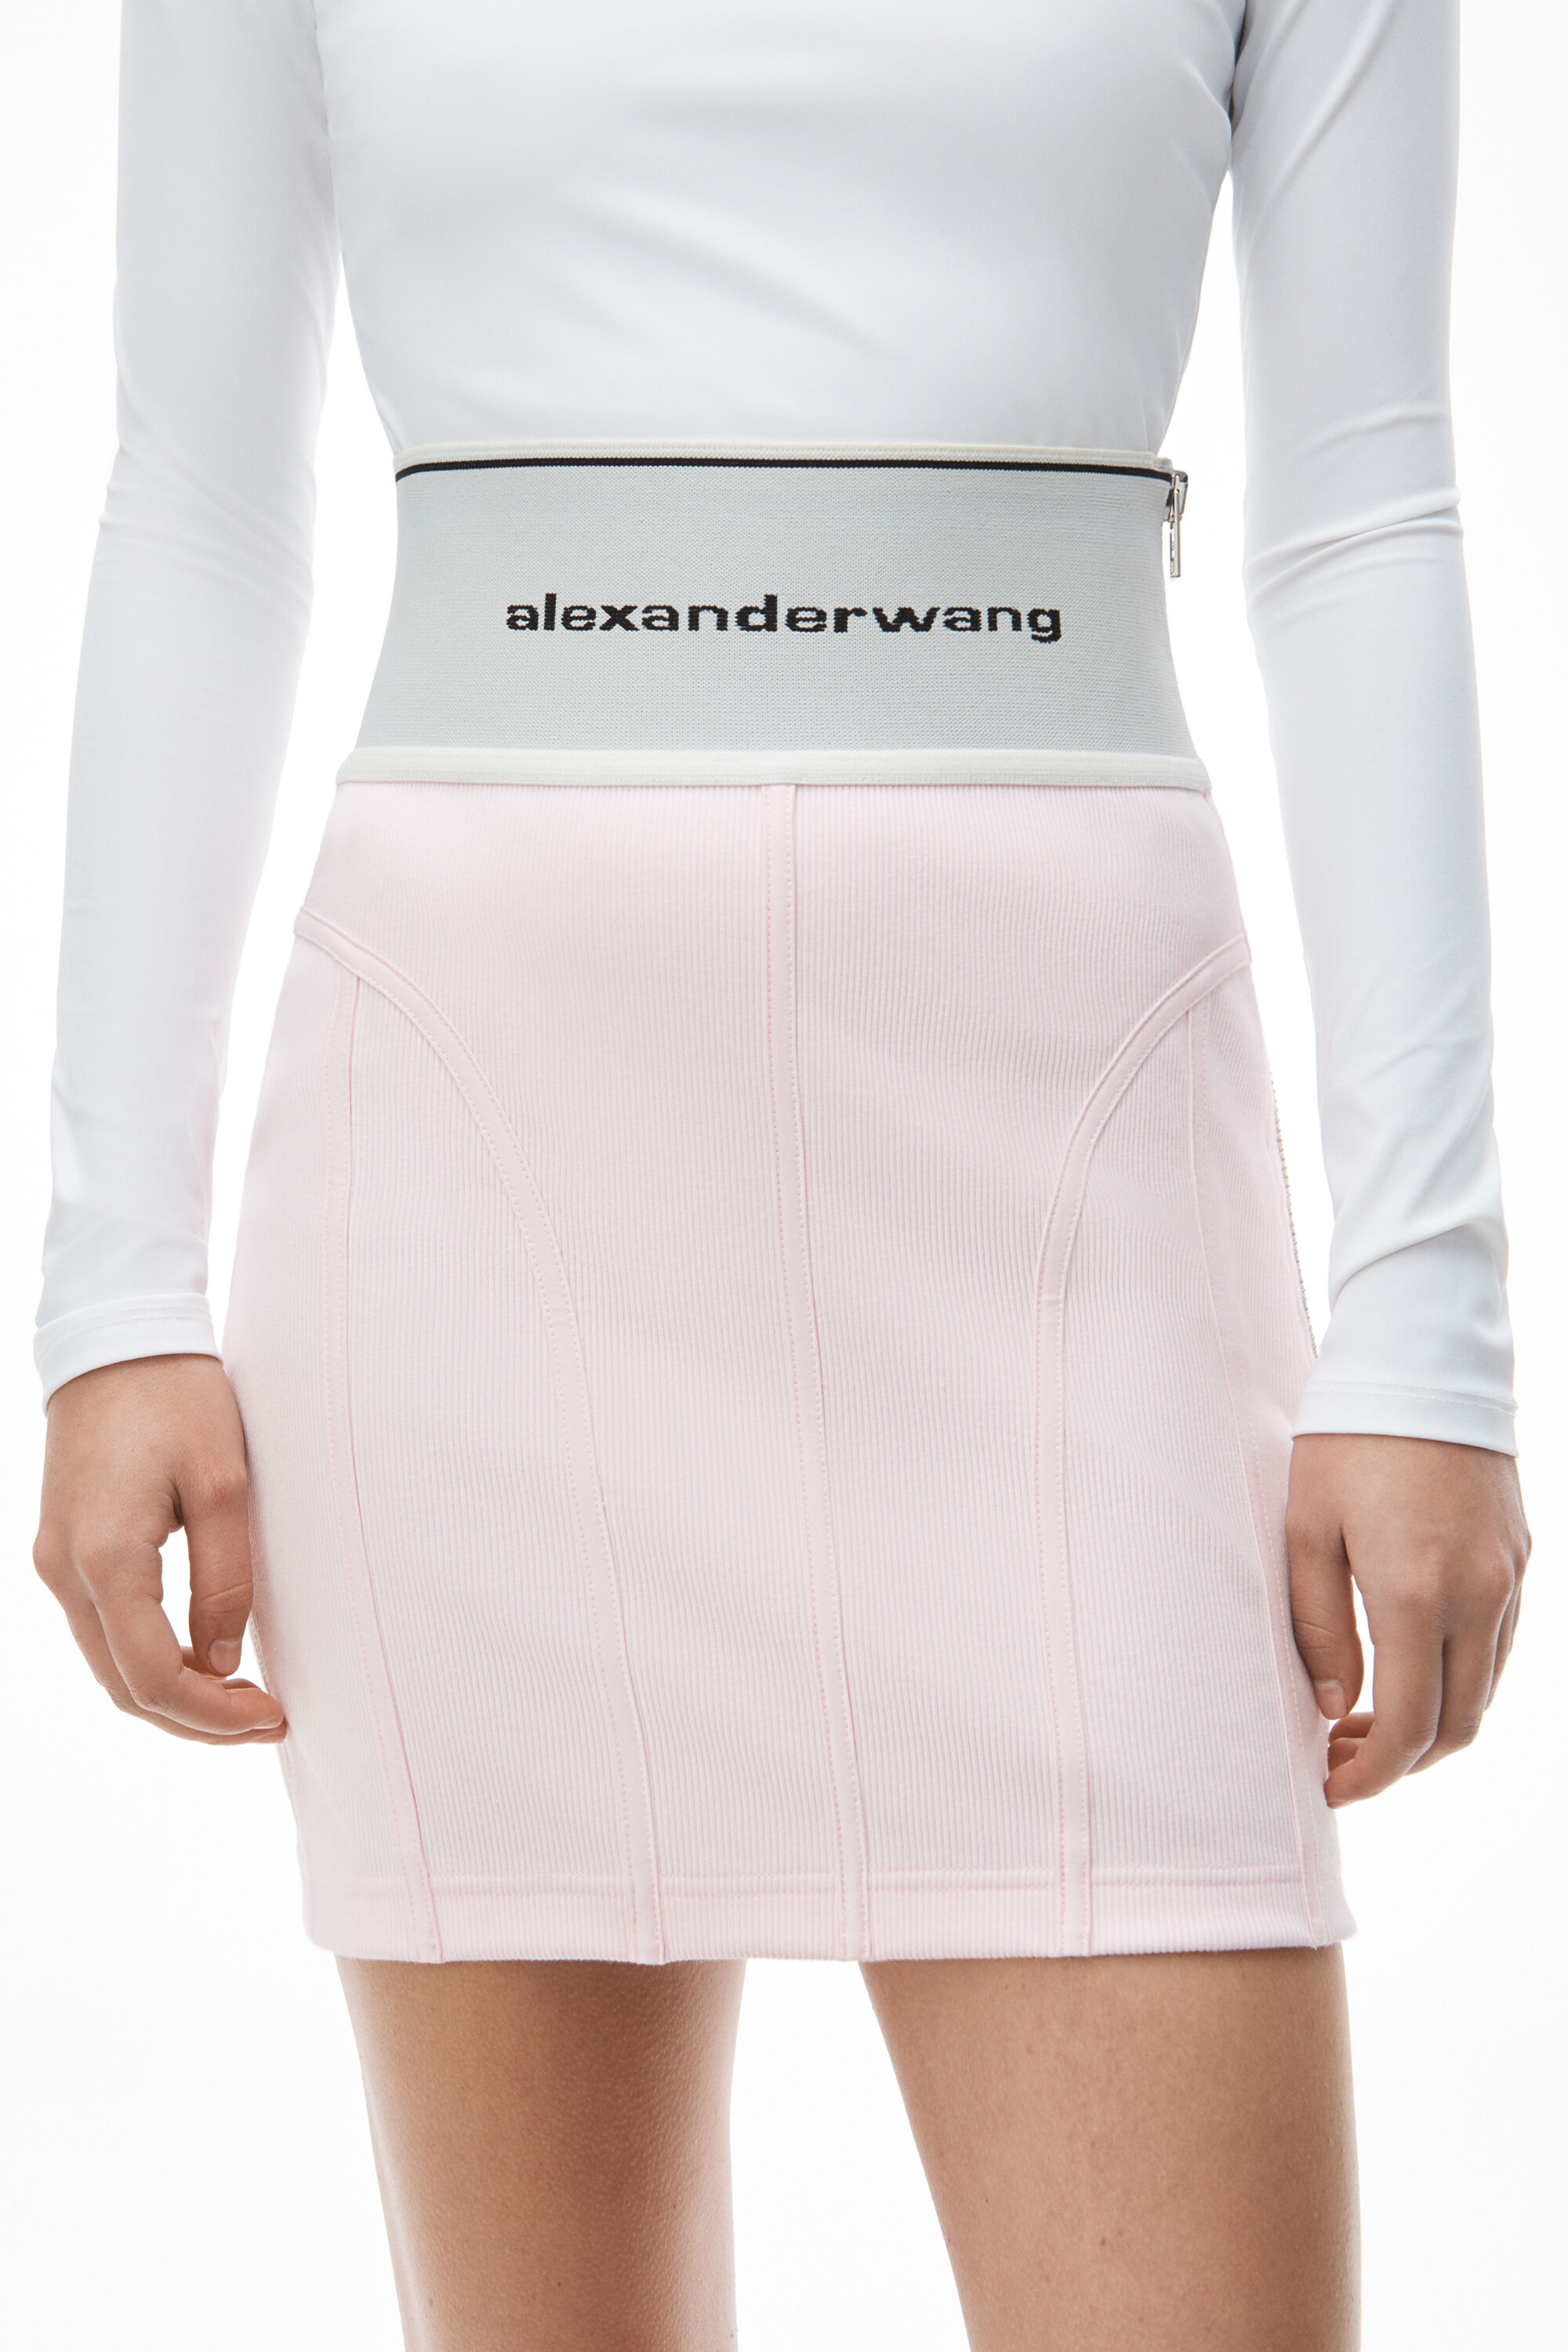 独特な 【送料無料】 ミニスカート エラスティック ロゴ wang alexander - ミニスカート - hlt.no